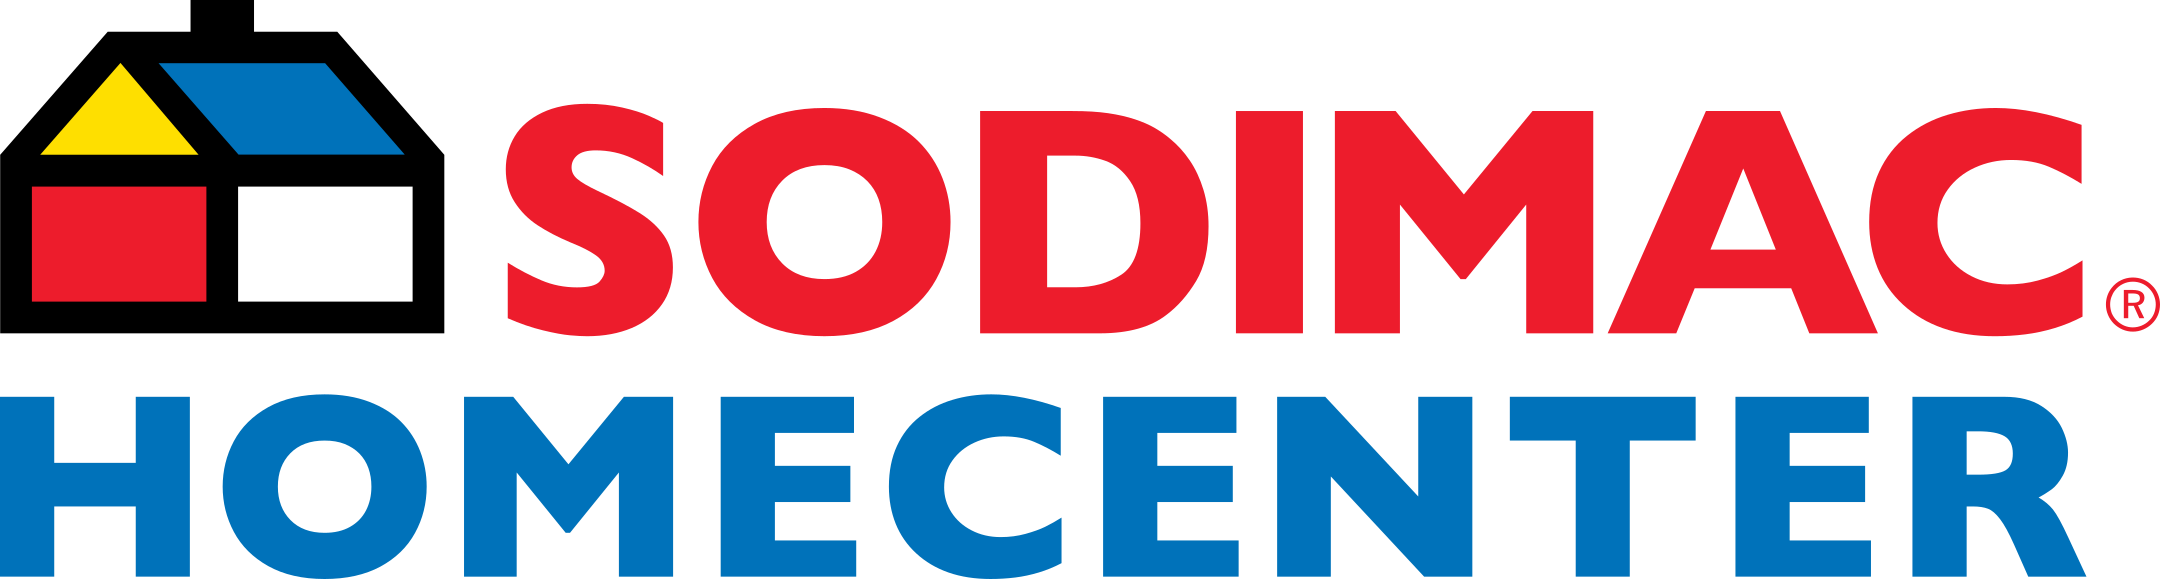 Sodimac HomeCenter Logo.